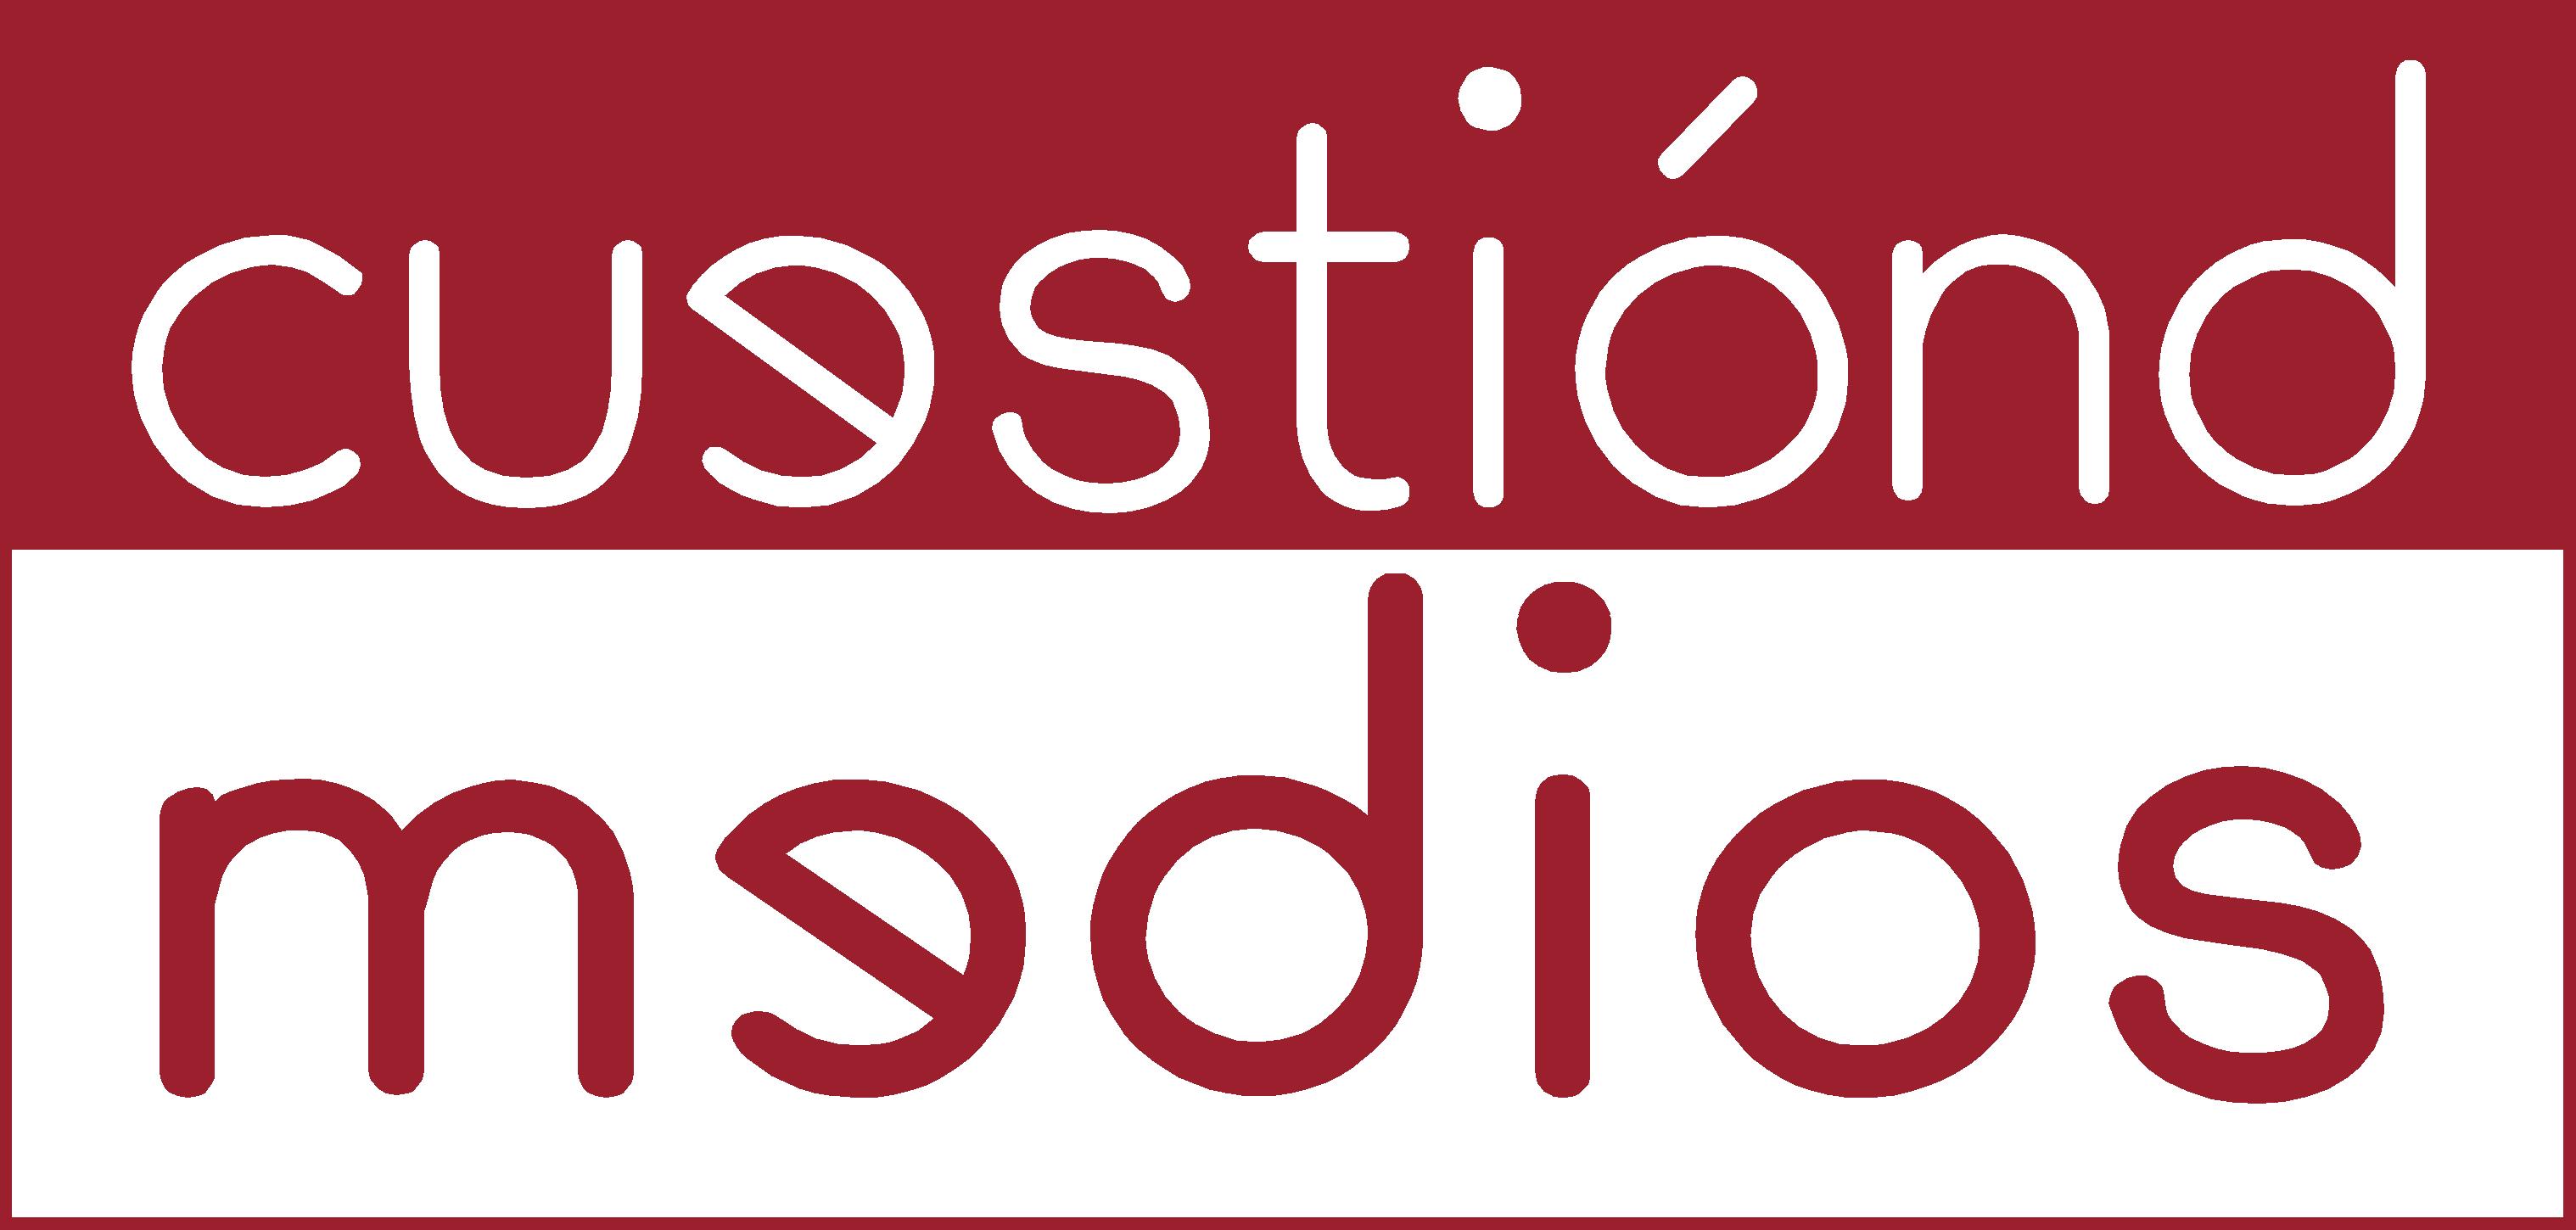 Cuestion-Logo_alta.jpg